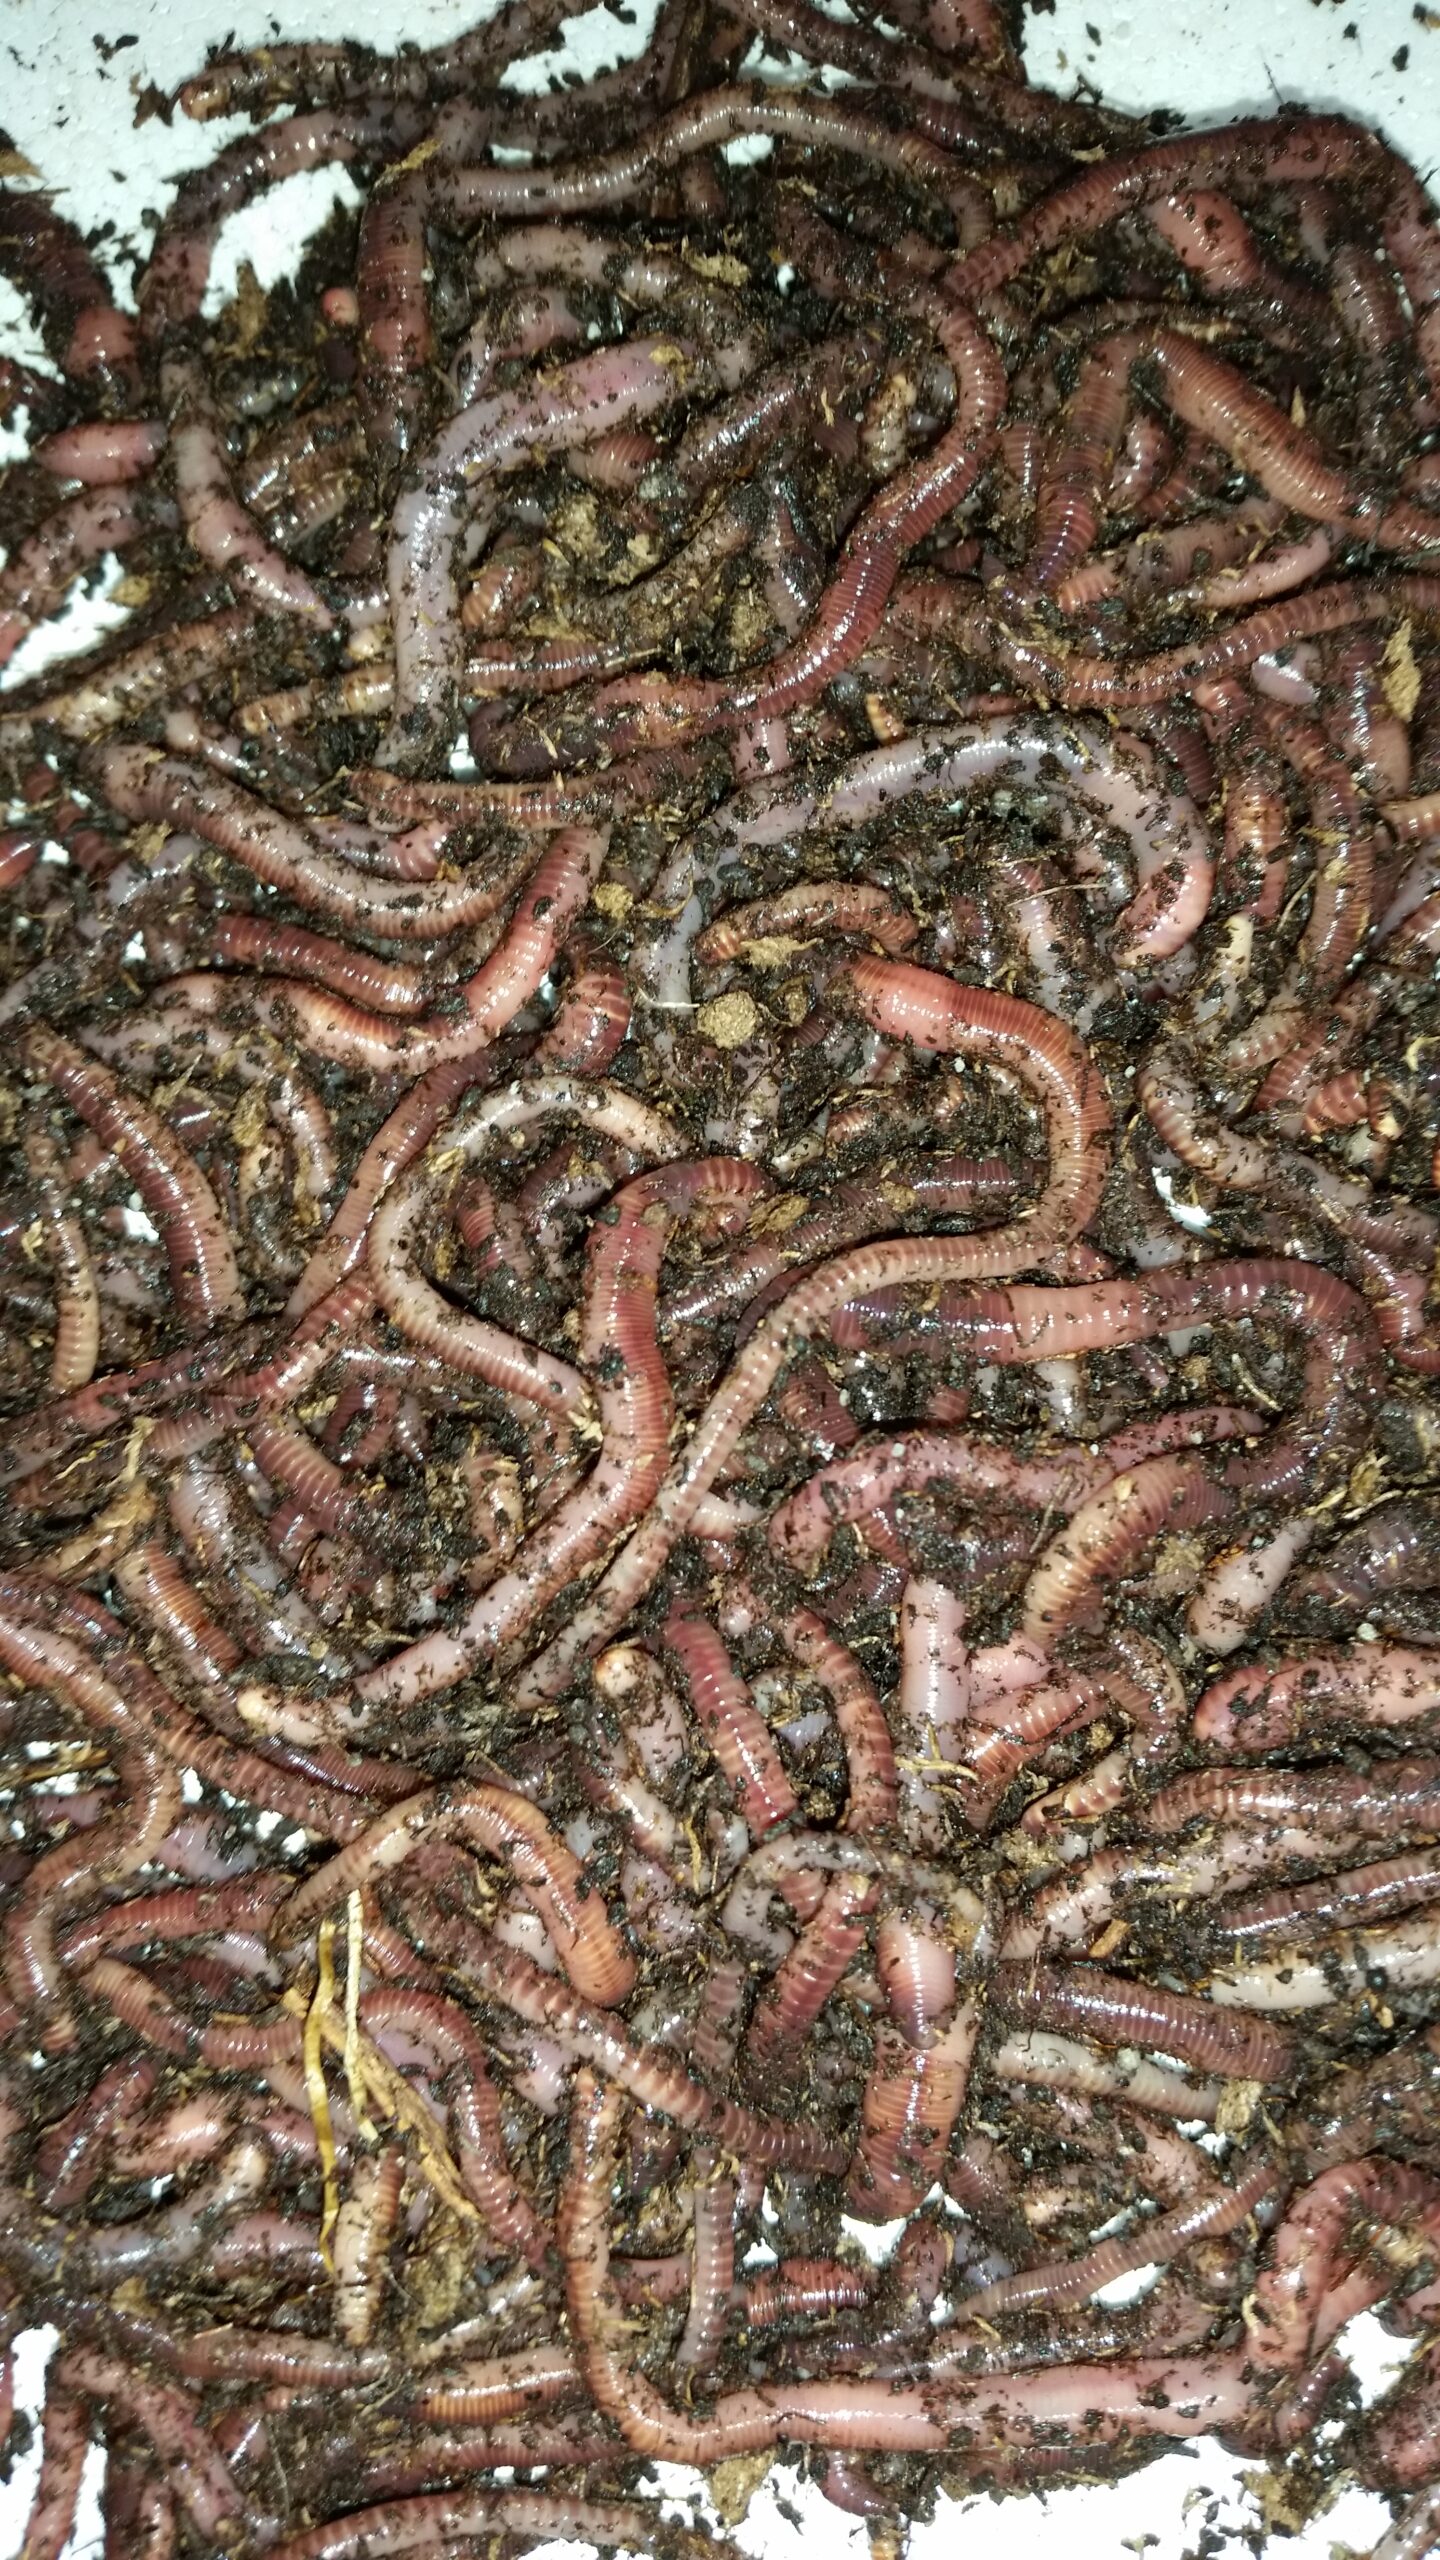 European Nightcrawlers, Euros, Trout Worms 